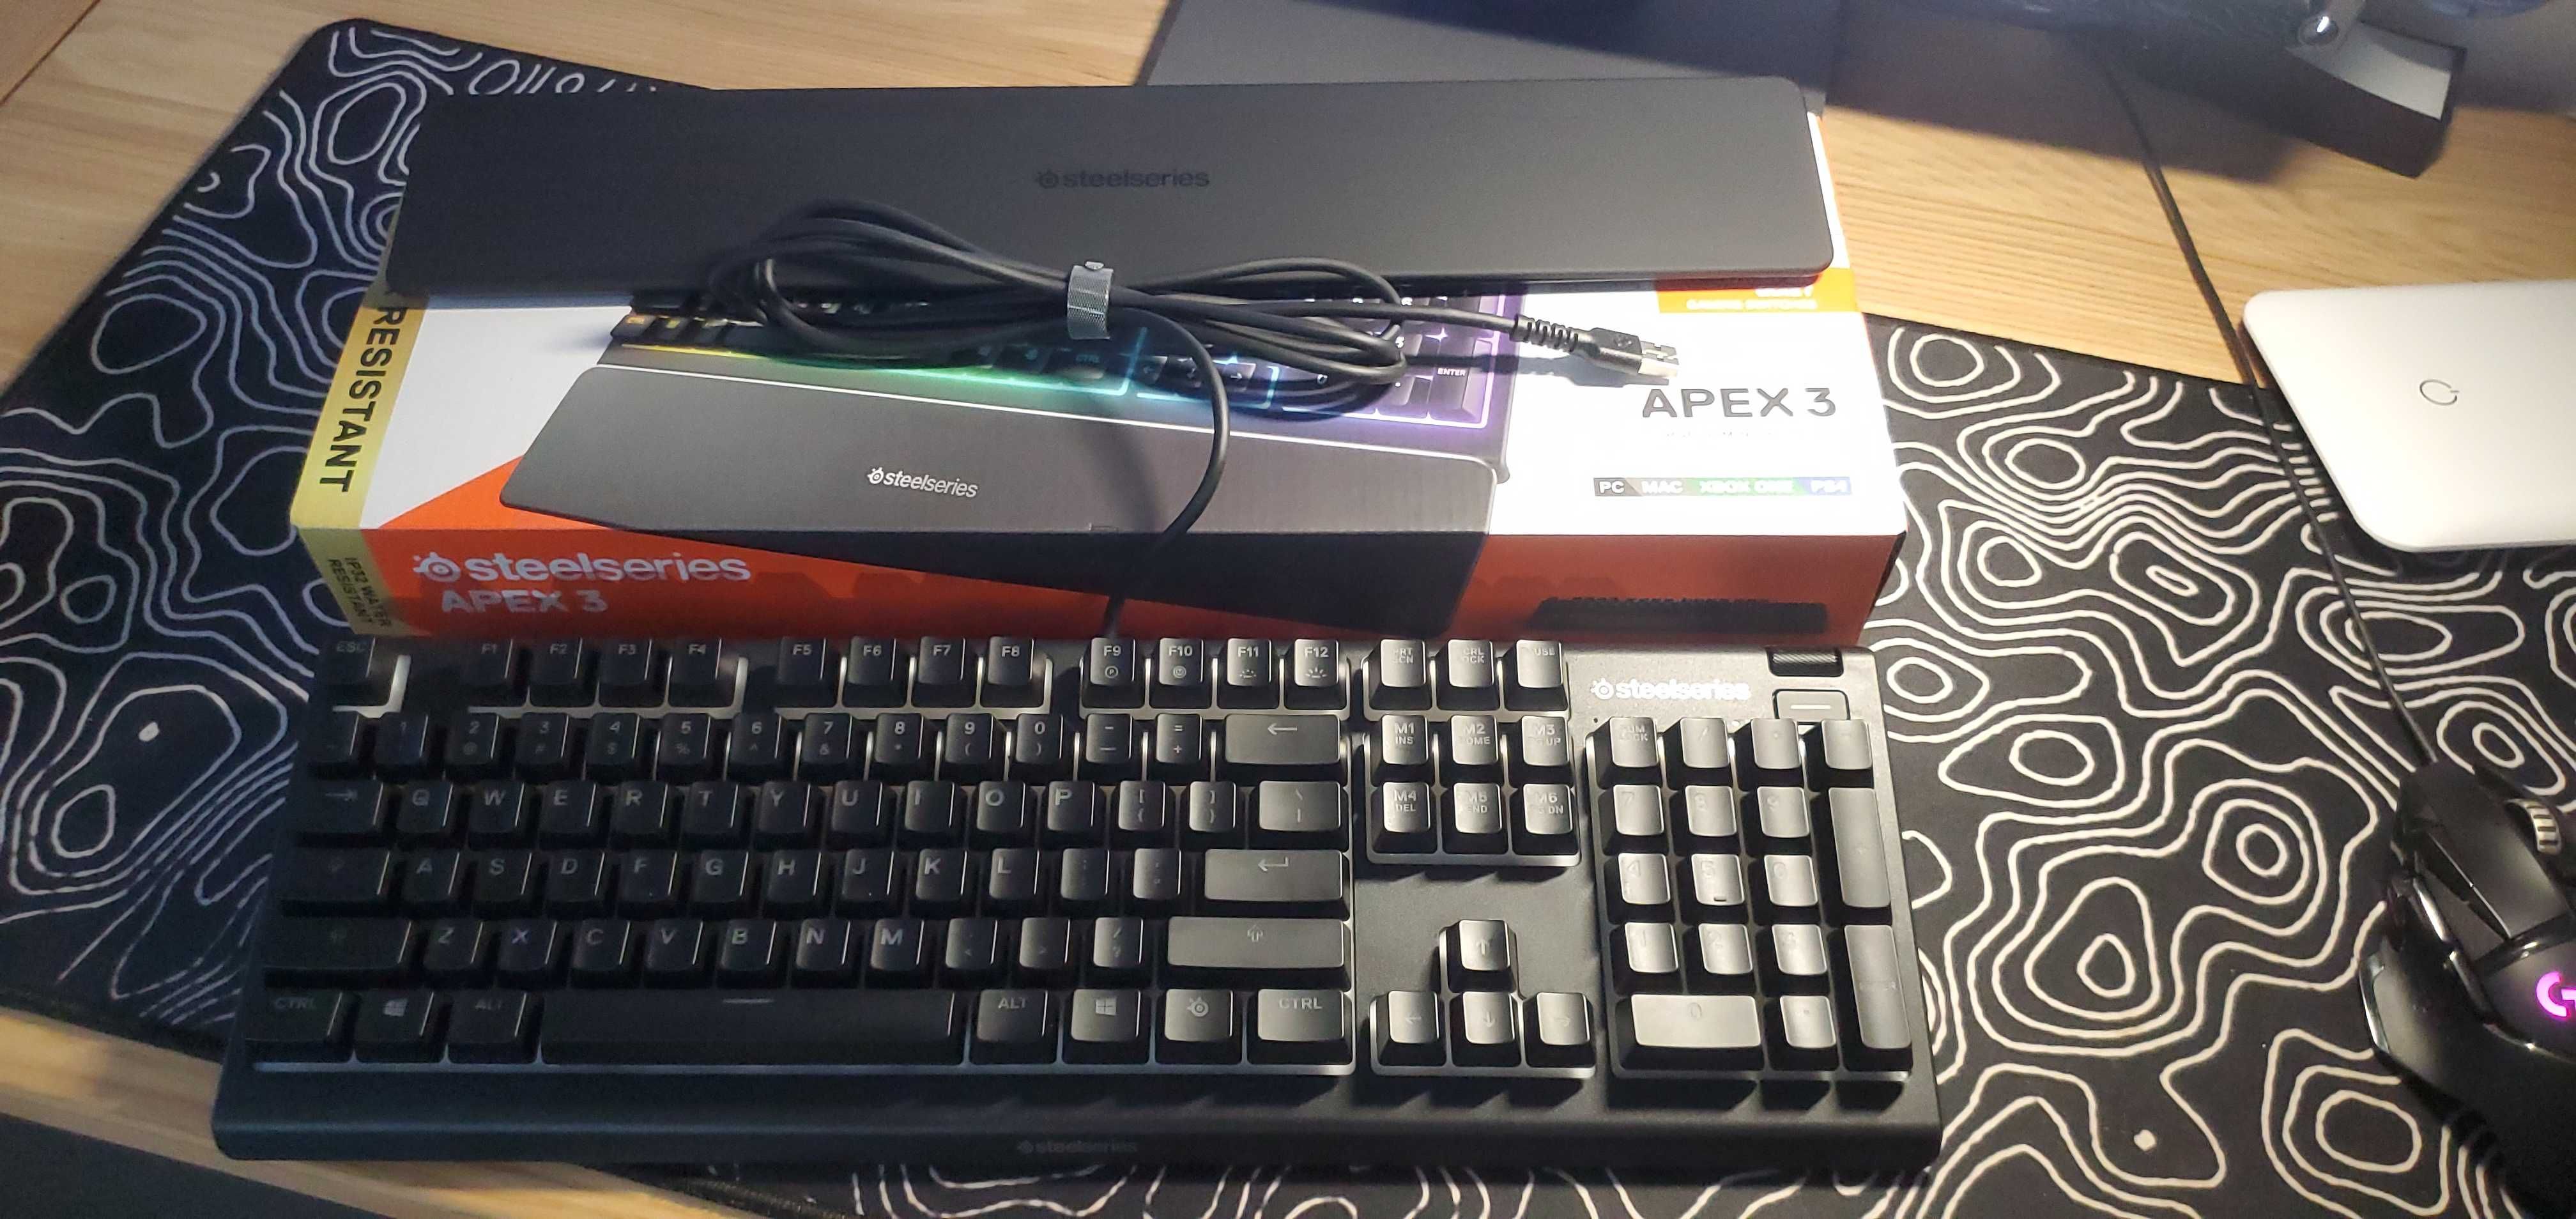 Tastatură Steelseries Apex 3, nouă, încă în garanție